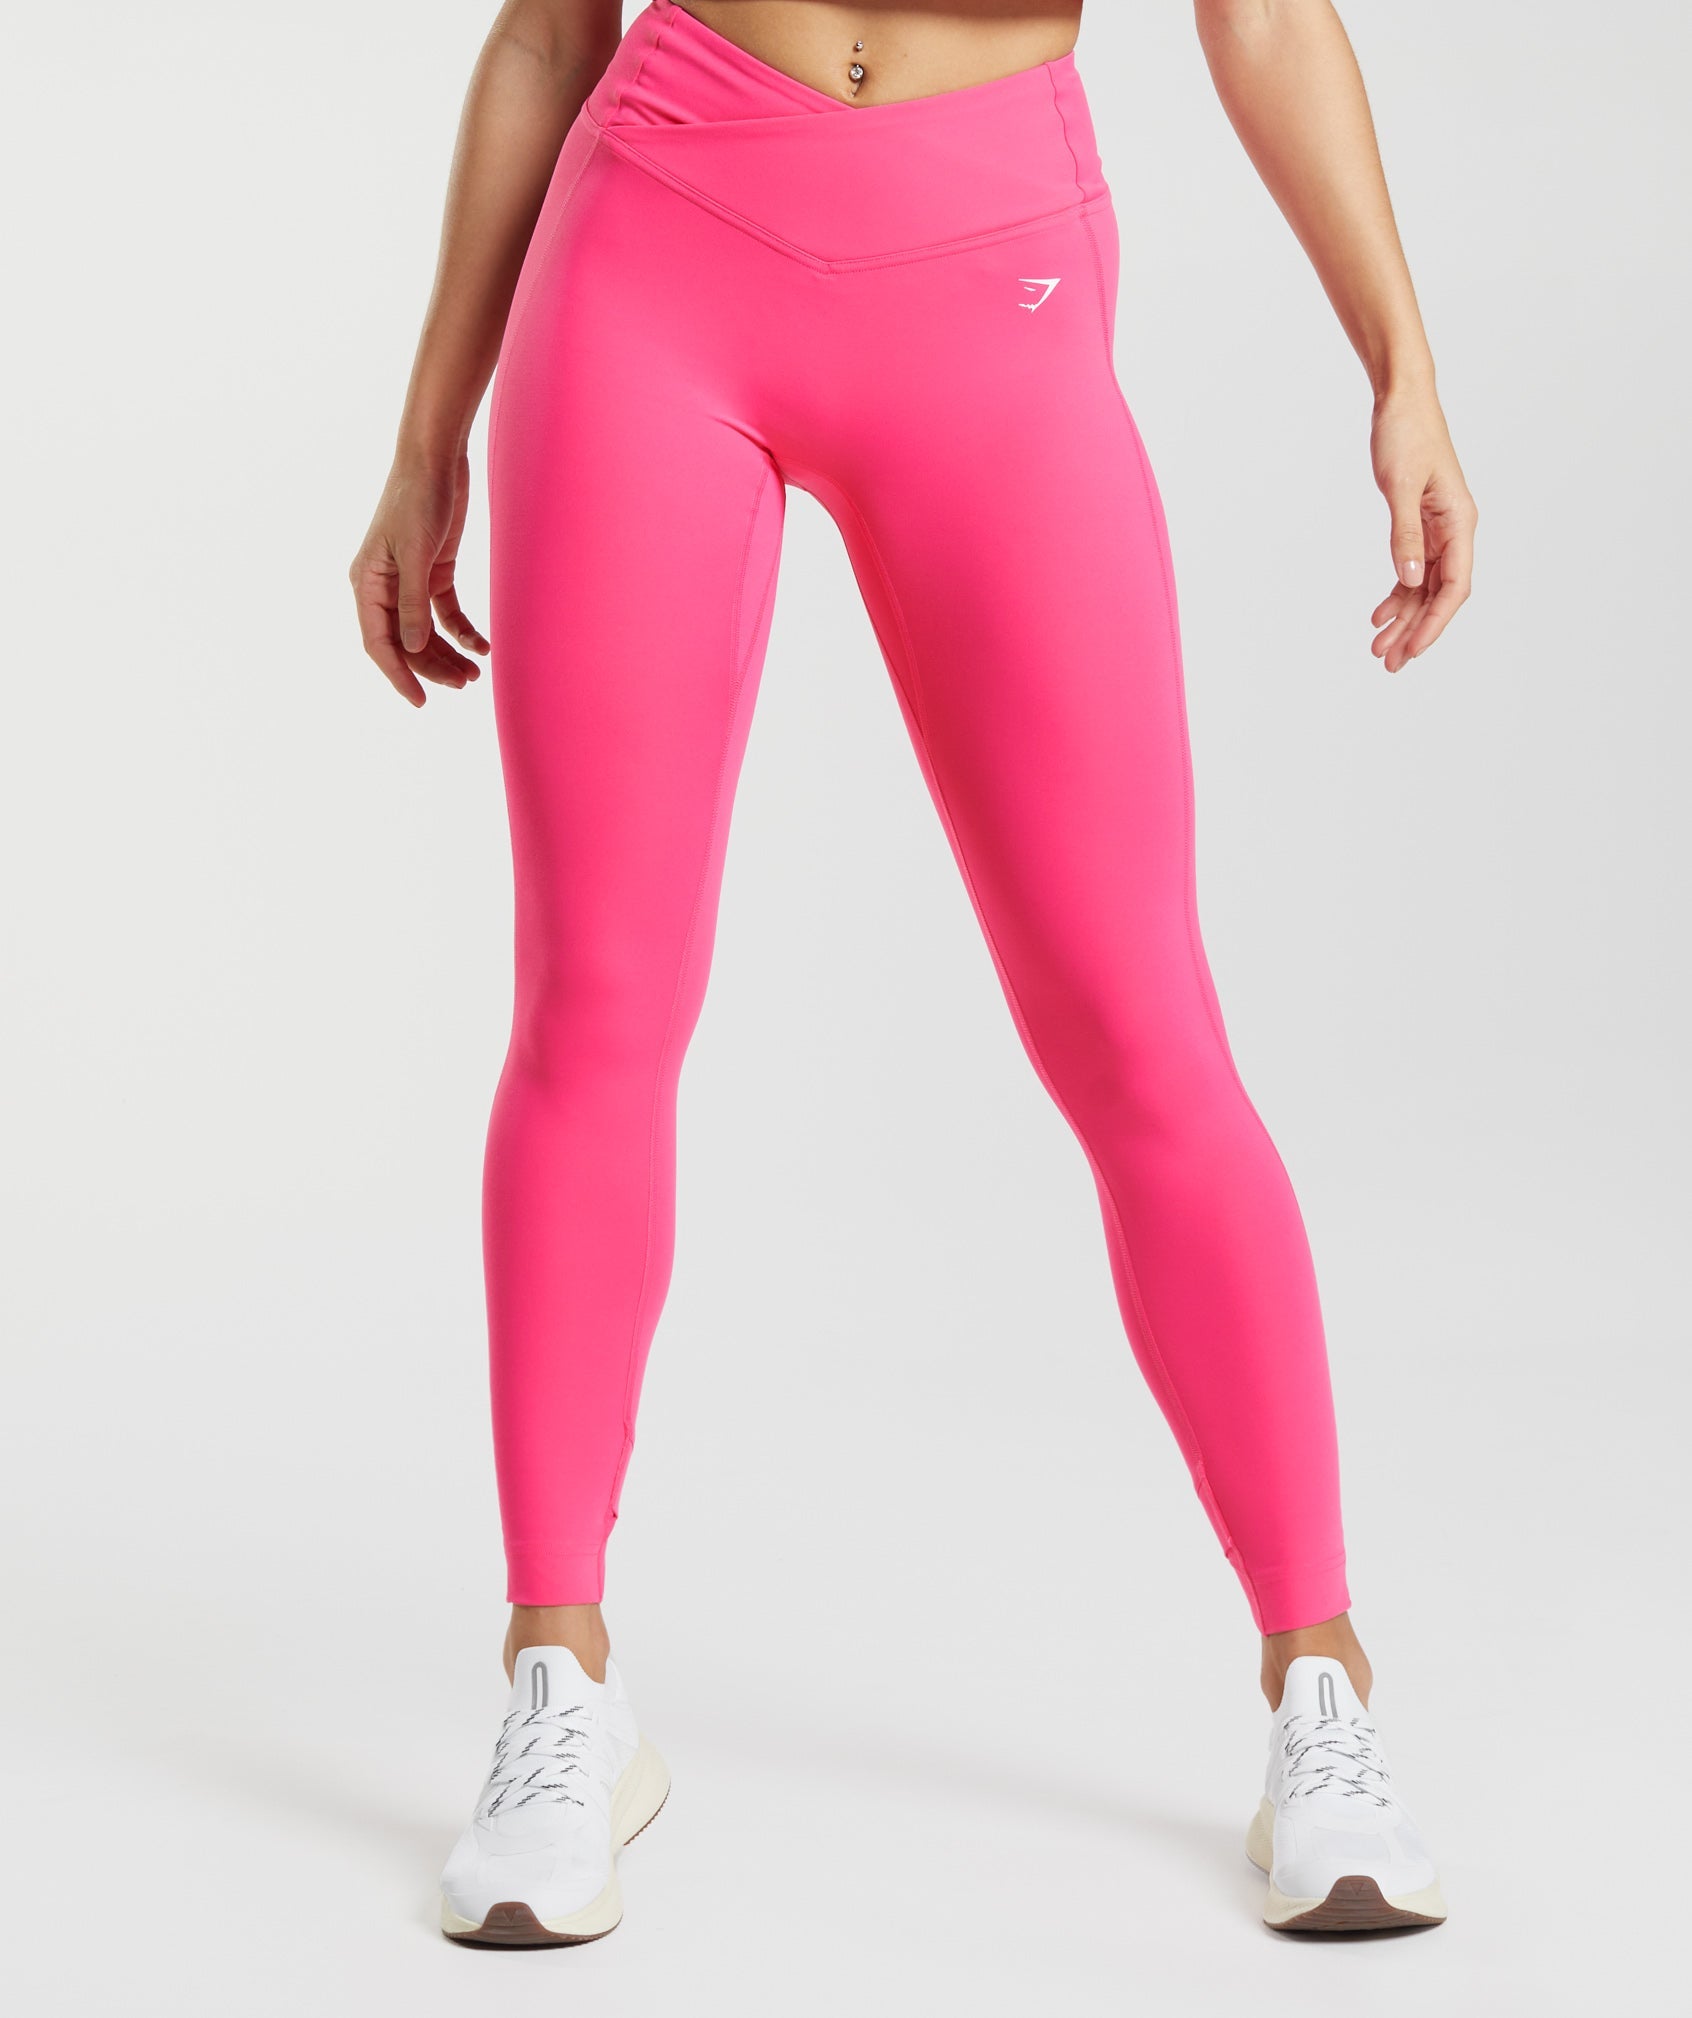 GYMSHARK Training Leggings (Pink, XS), Women's Fashion, Activewear